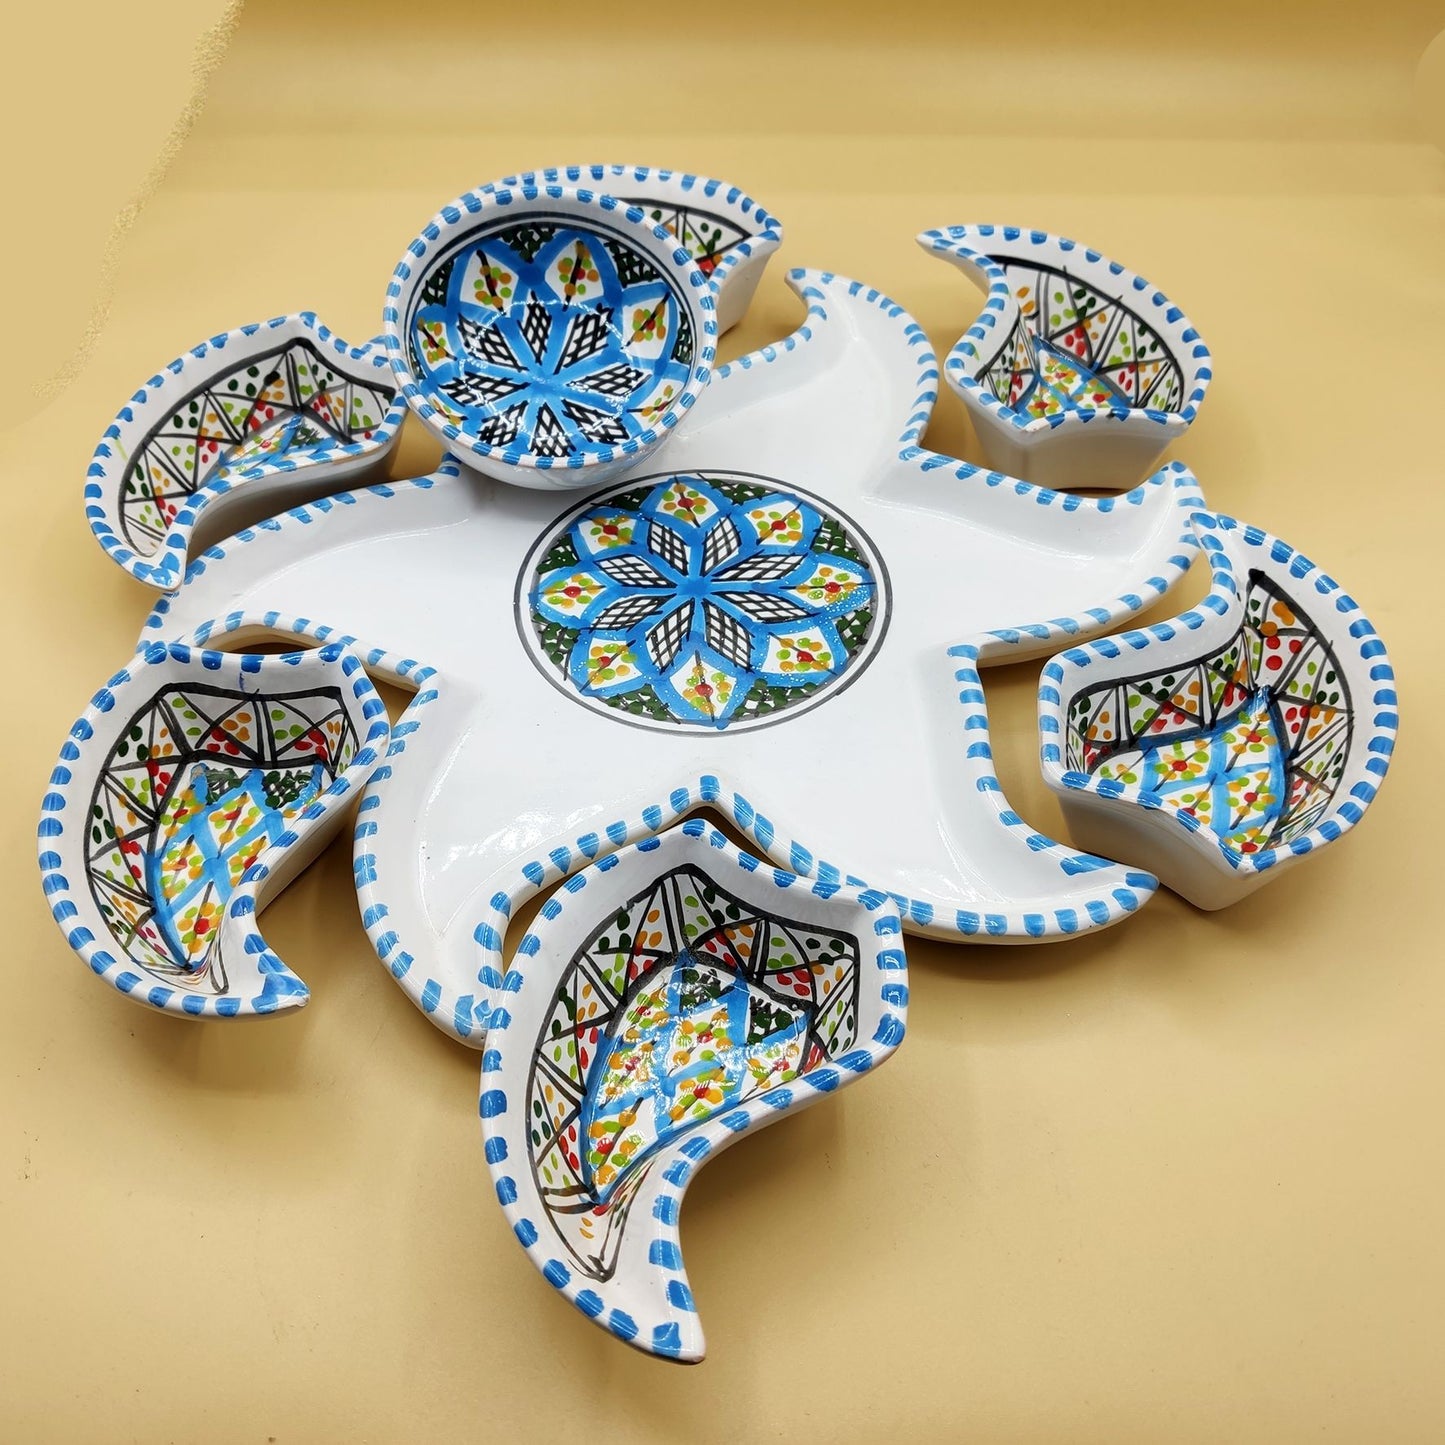 Antipastiera Piatto Etnico Ceramica Terracotta Tunisina Marocchina 2611201203